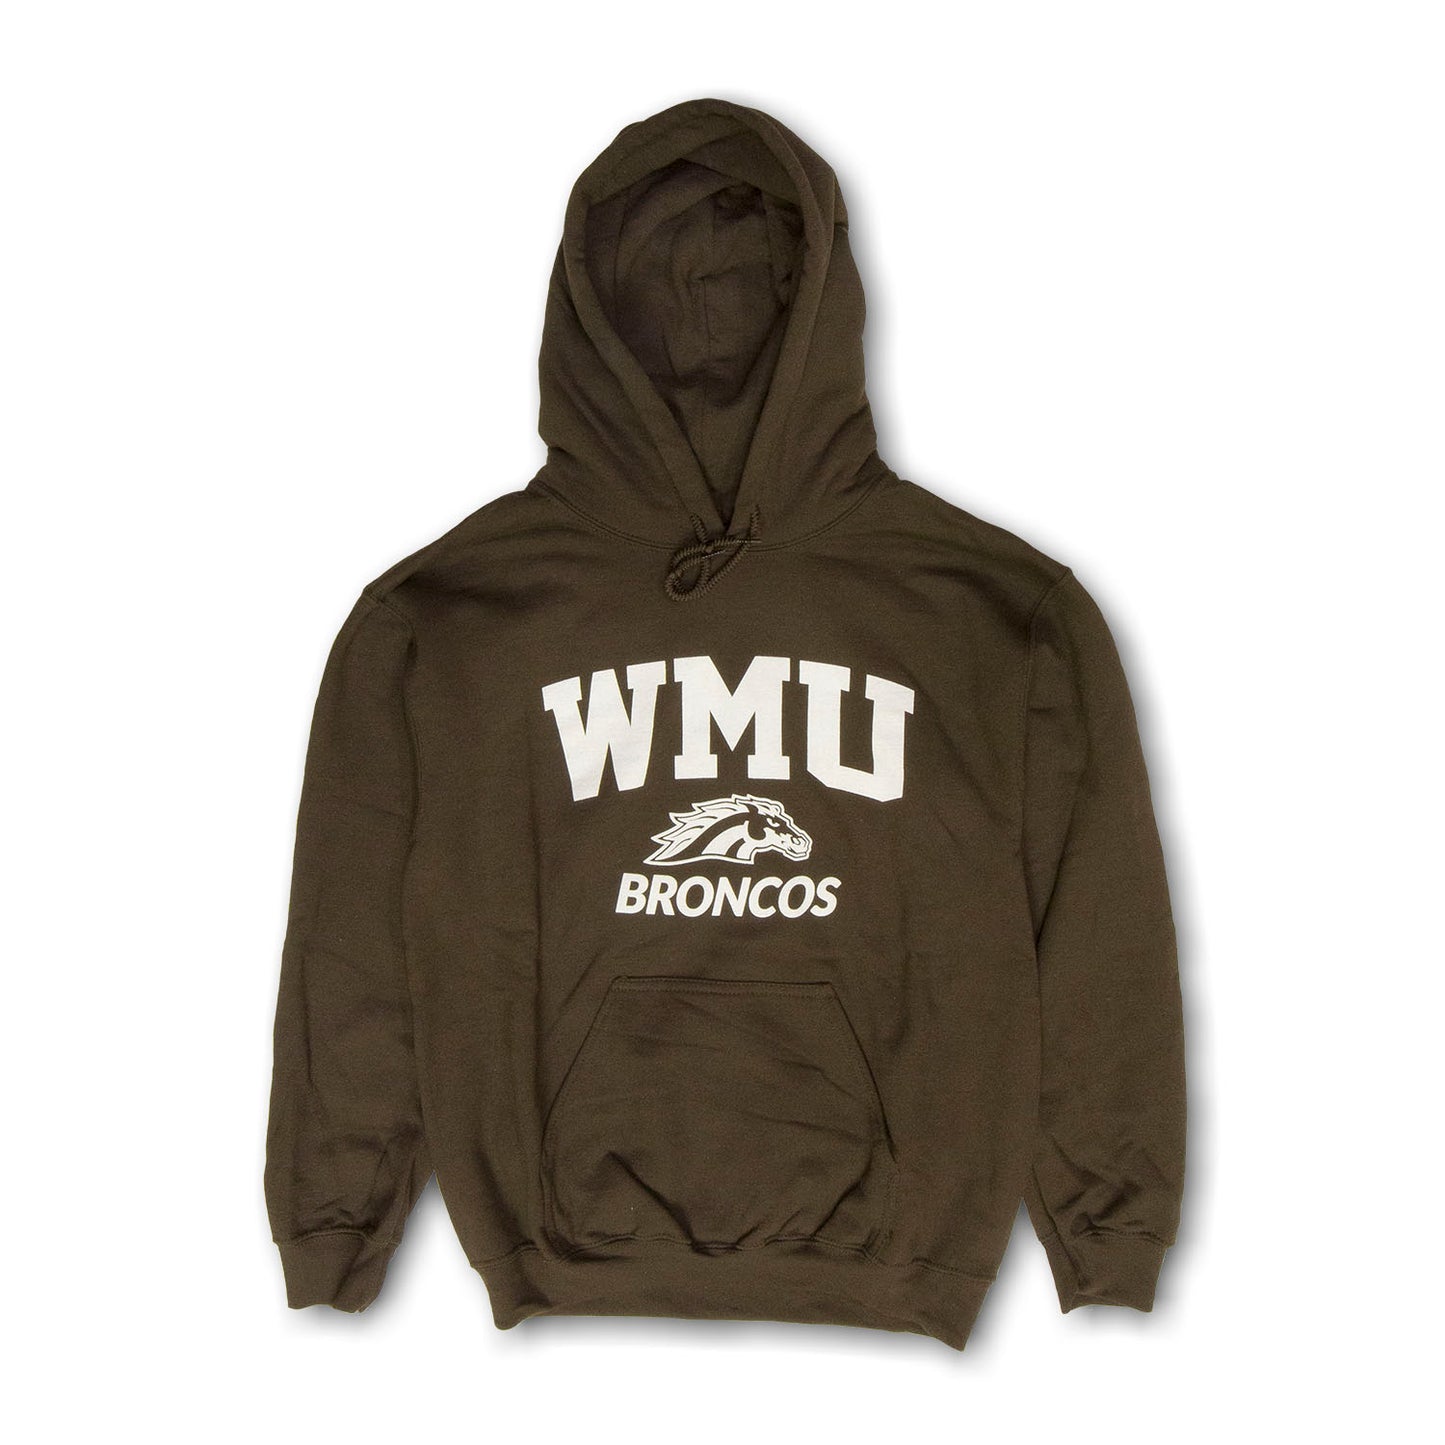 WMU Broncos Hoodie